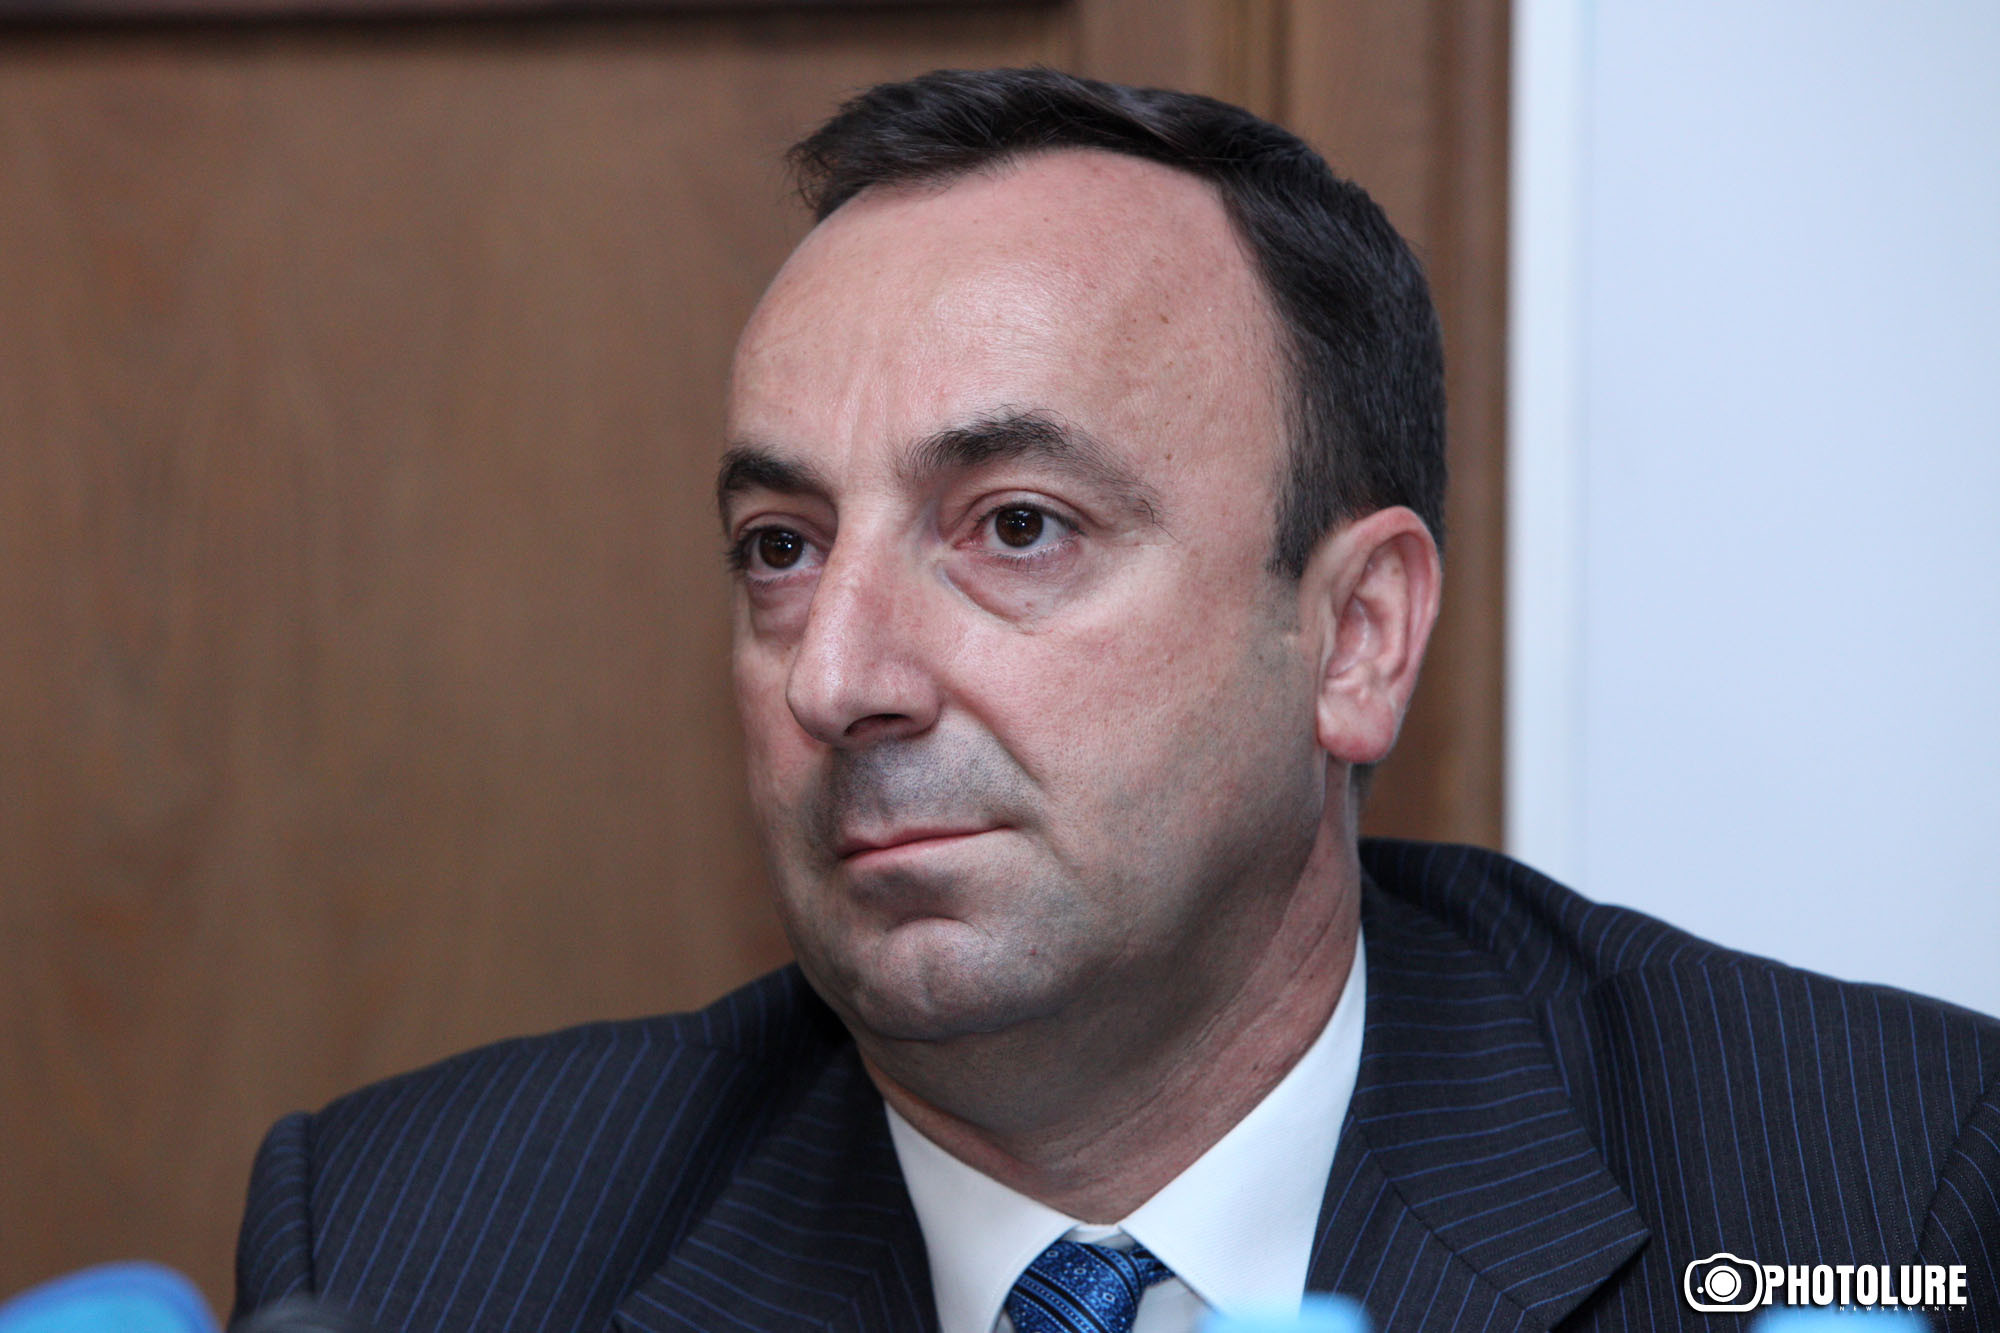 Հրայր Թովմասյանն ընտրվեց Սահմանադրական դատարանի անդամ